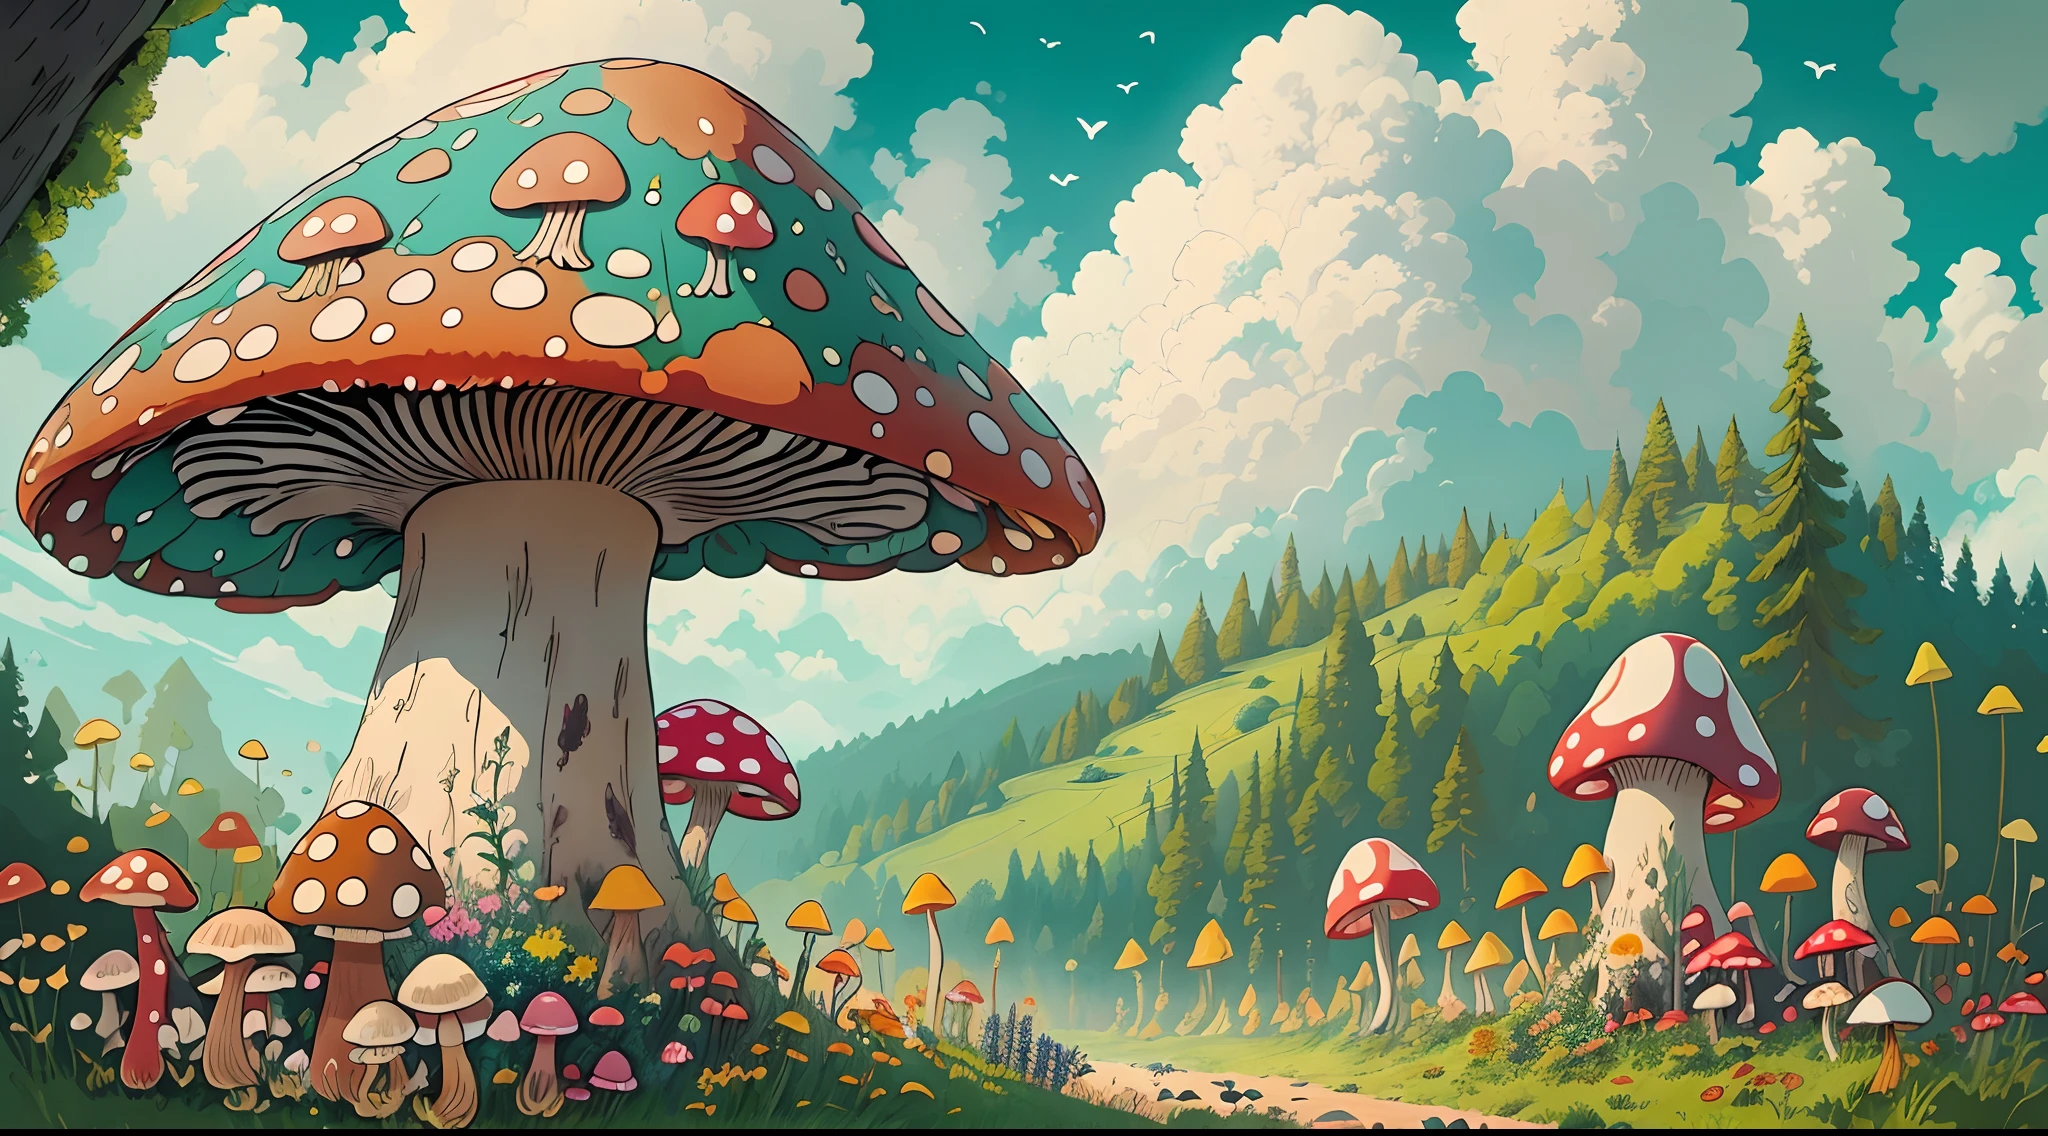 mit einem realistischen、Sei authentisch、schön、Pilze、a large amount of Pilze、der Wald、im Wald、Straße im Wald、Farbe々Colored Pilze、großer Pilz、Riesenpilz、Erstaunliche Landschaft Ölgemälde Studio Ghibli Hayao Miyazaki Blütenwiese mit blauem Himmel und weißen Wolken --v6